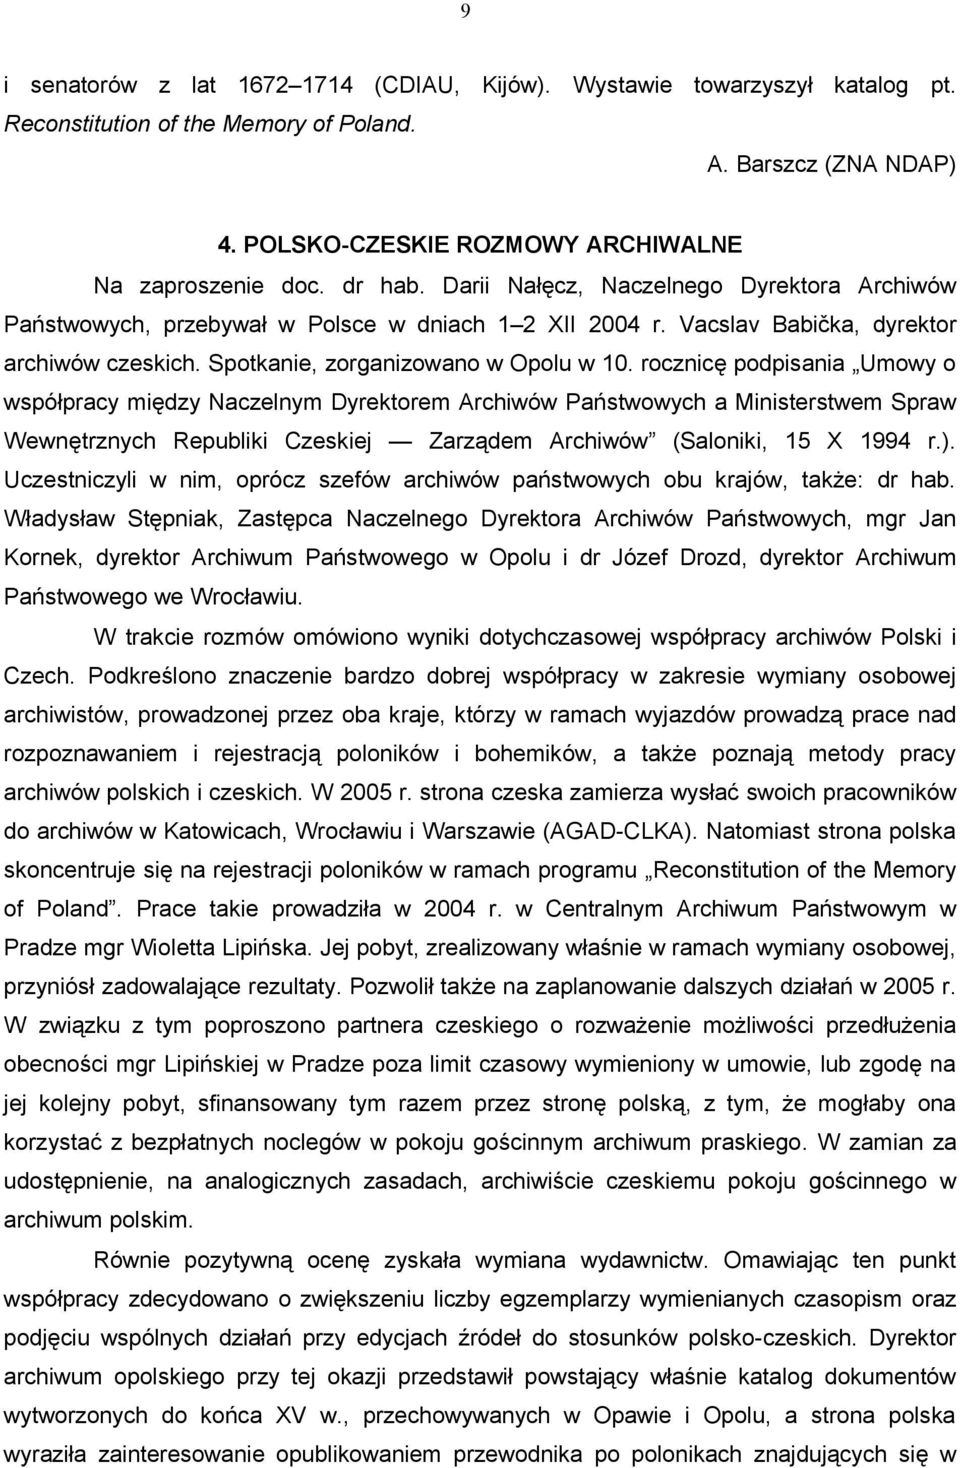 rocznicę podpisania Umowy o współpracy między Naczelnym Dyrektorem Archiwów Państwowych a Ministerstwem Spraw Wewnętrznych Republiki Czeskiej Zarządem Archiwów (Saloniki, 15 X 1994 r.).